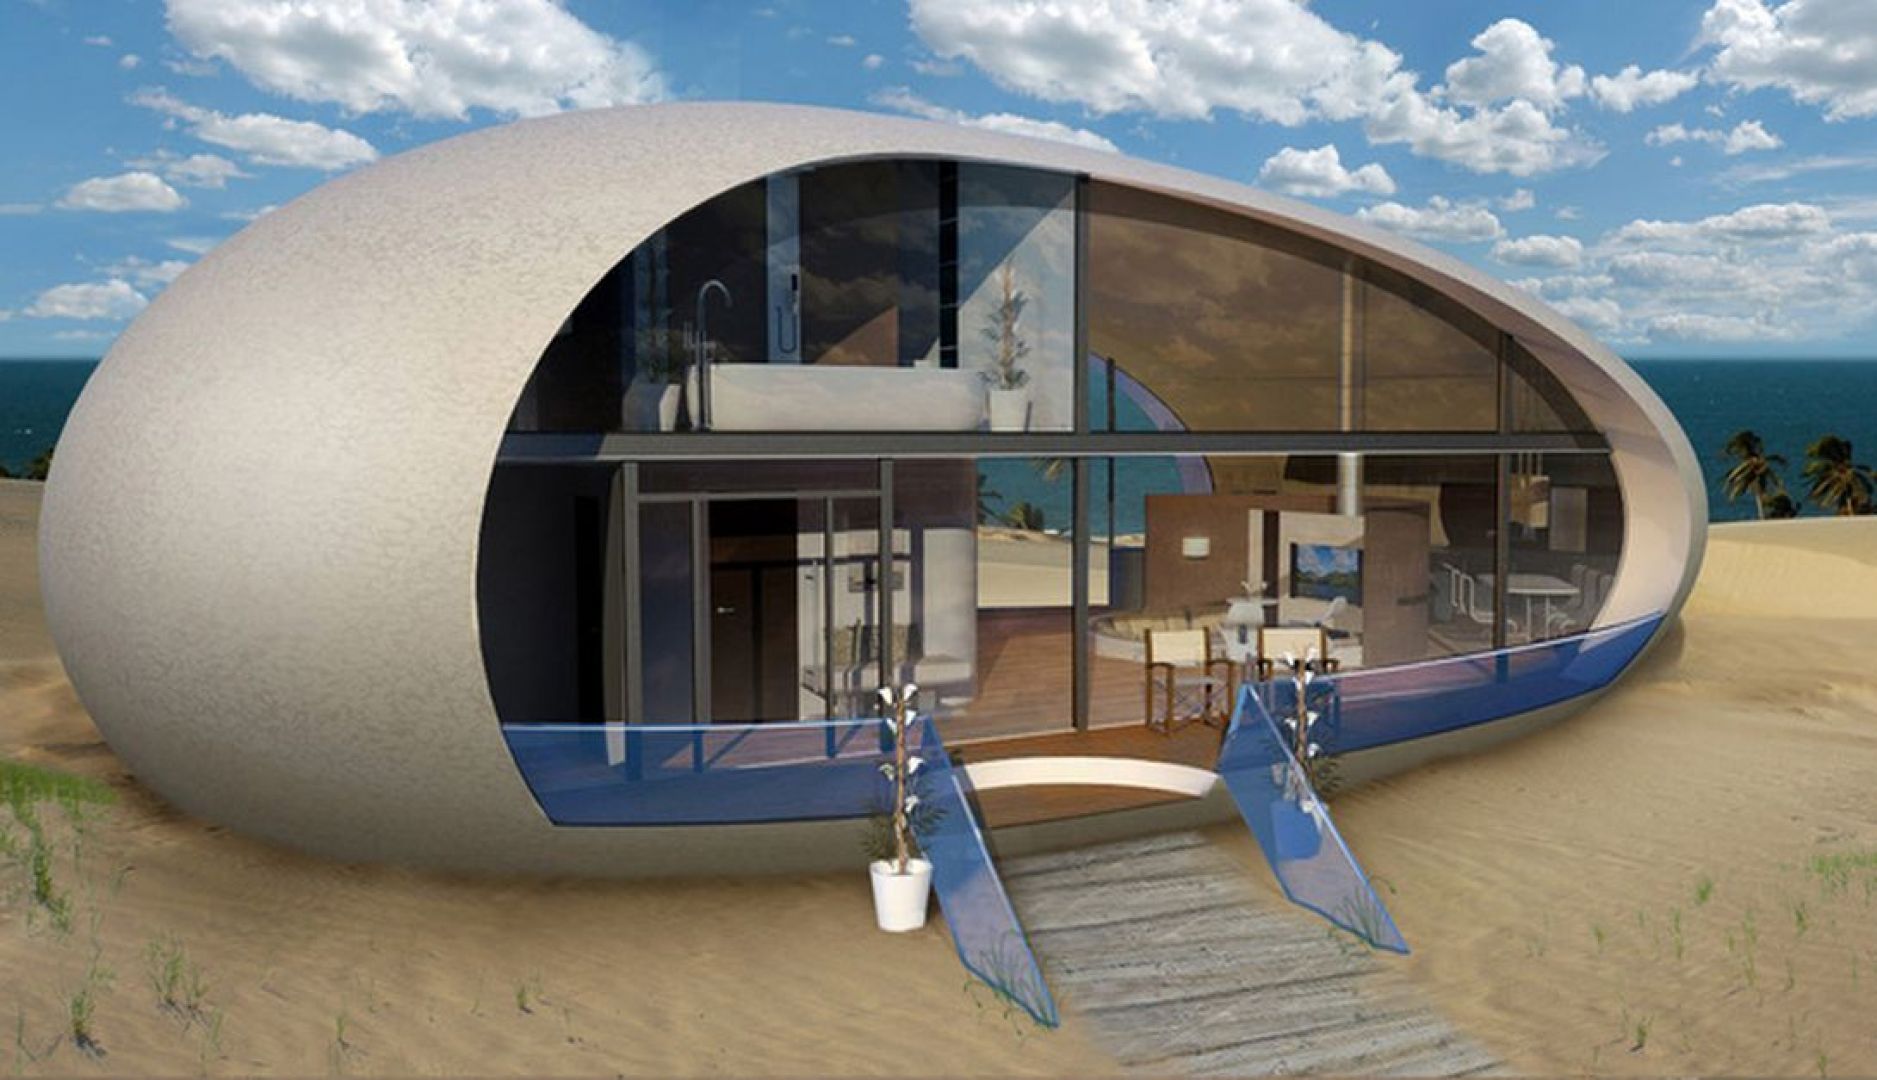 Zadokowane na plaży nowoczesne jajo może być całkiem luksusowym domem na wakacje. Fot. BMT Asia Pacifc Group/Henry Ward Design